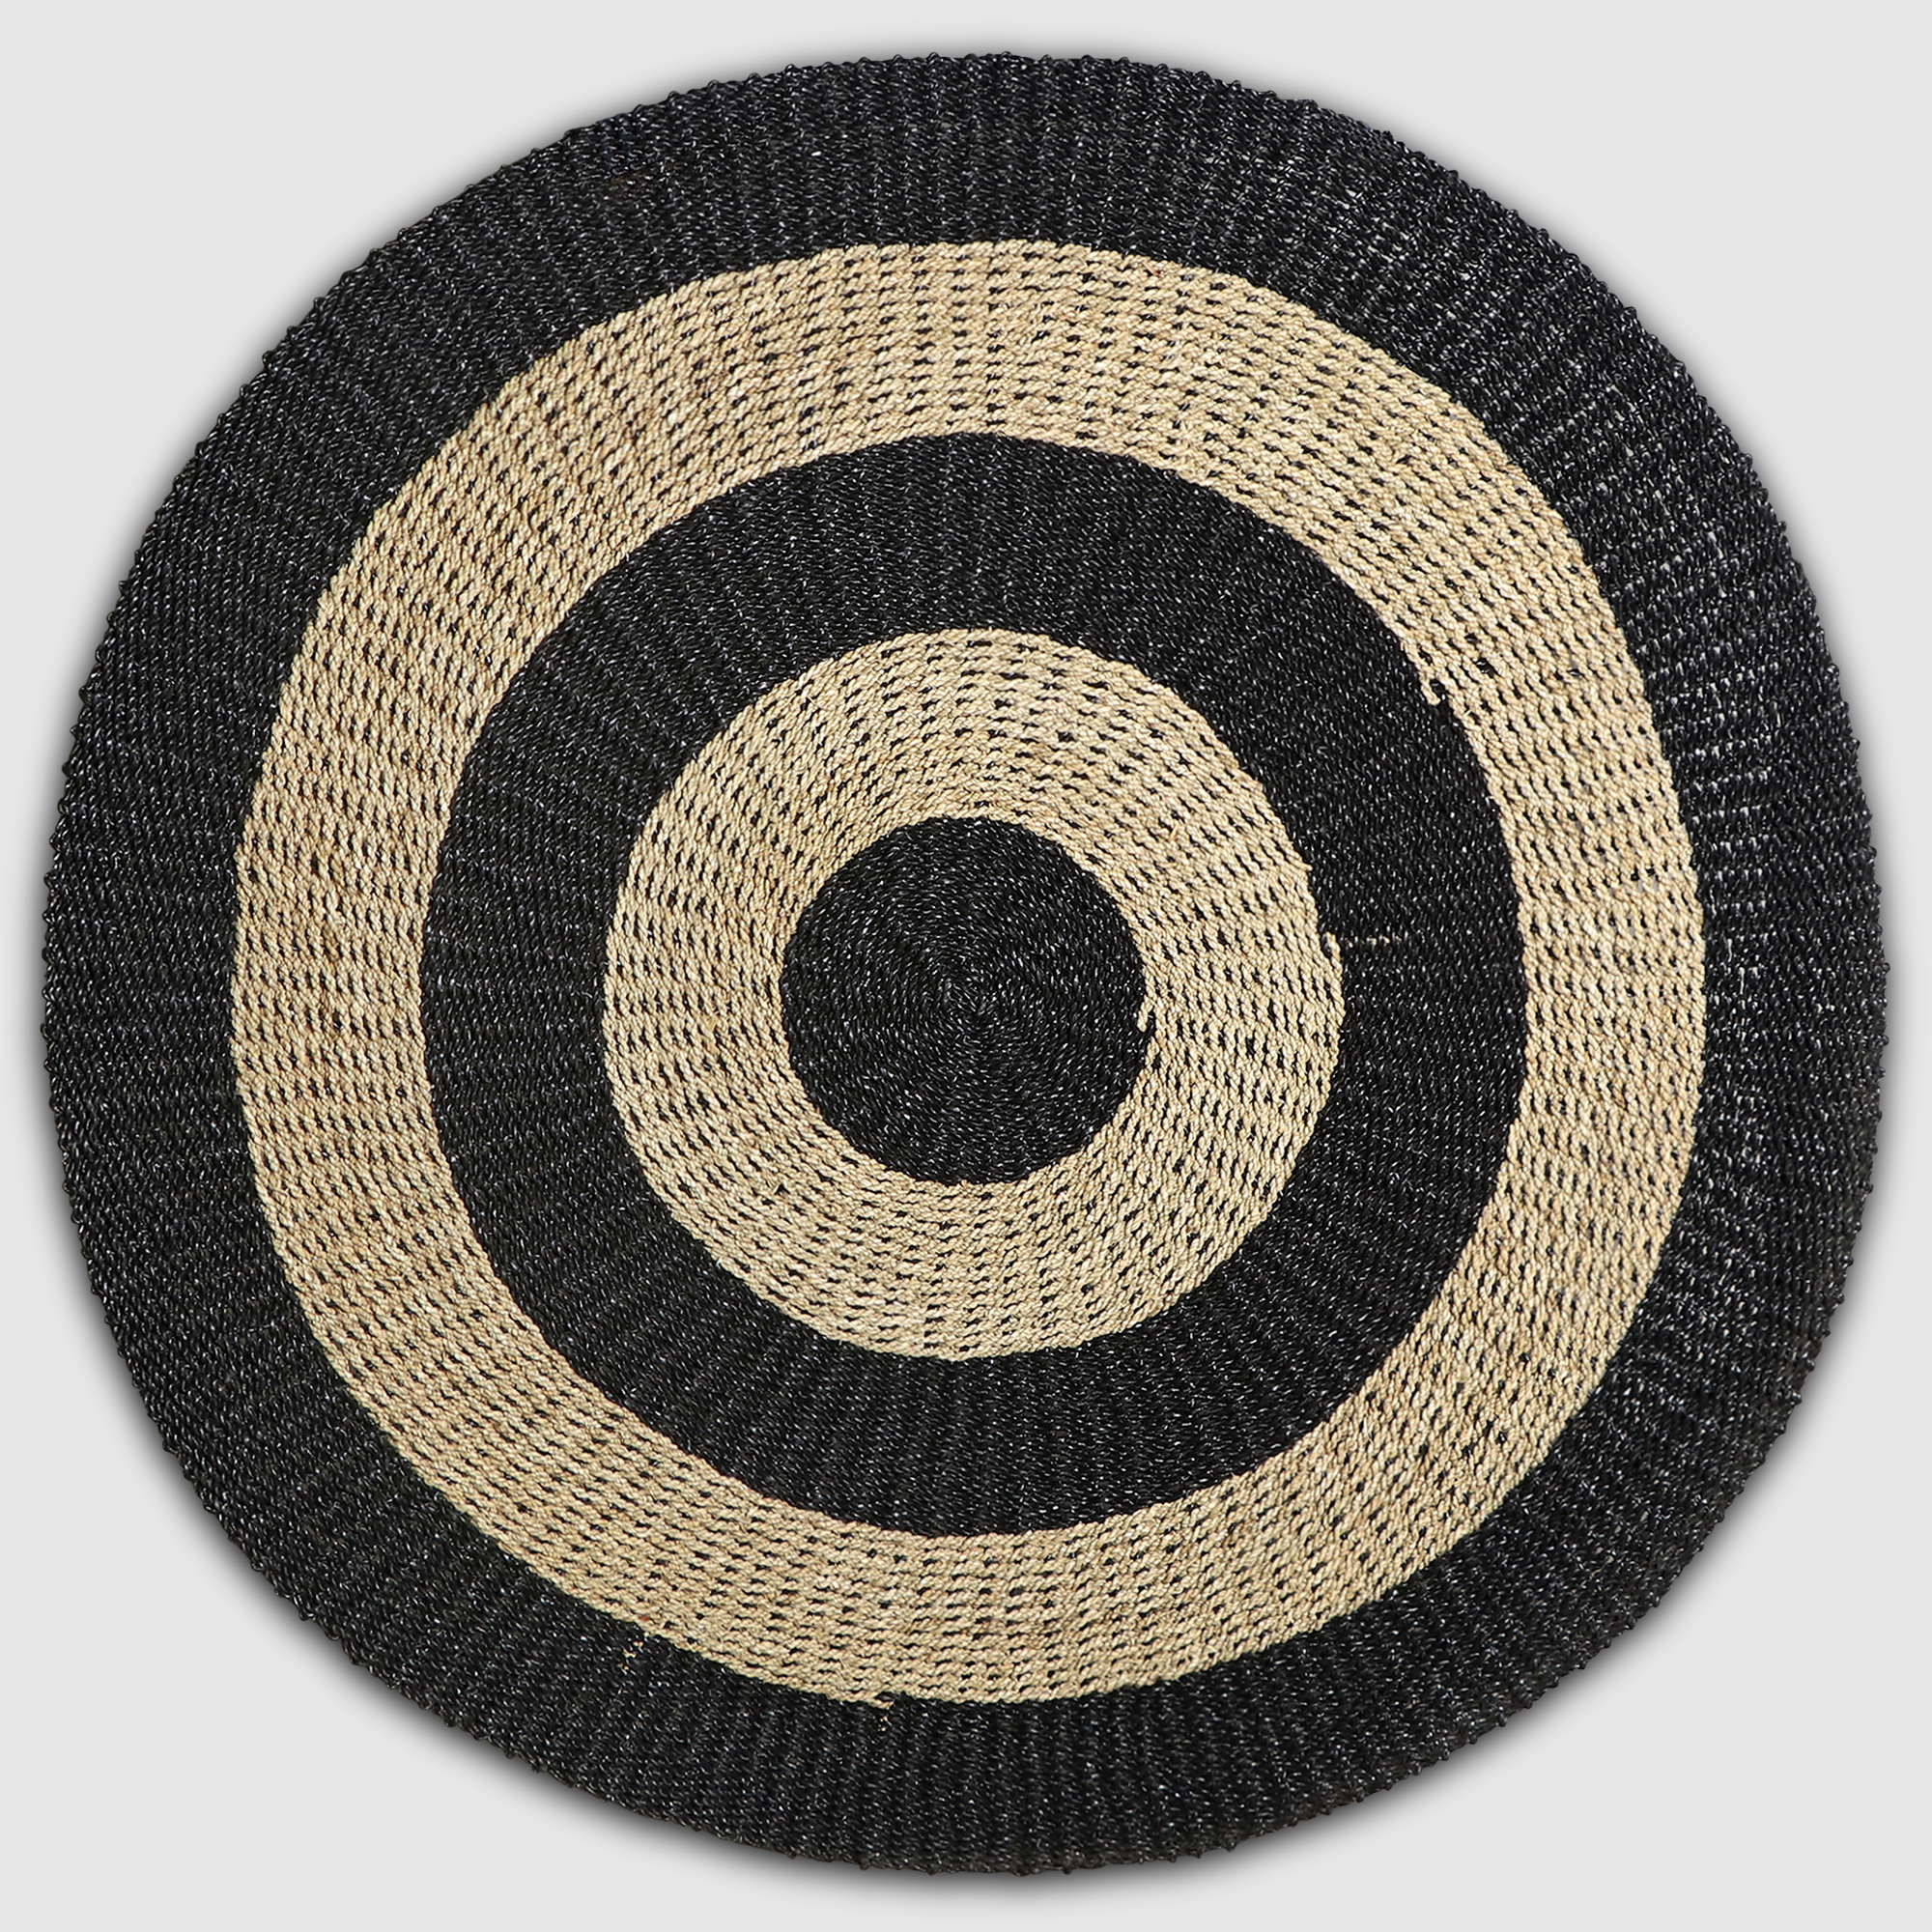 Коврик Rattan grand rug tenun nagan в полоску черного и песочного цвета, д 150 см